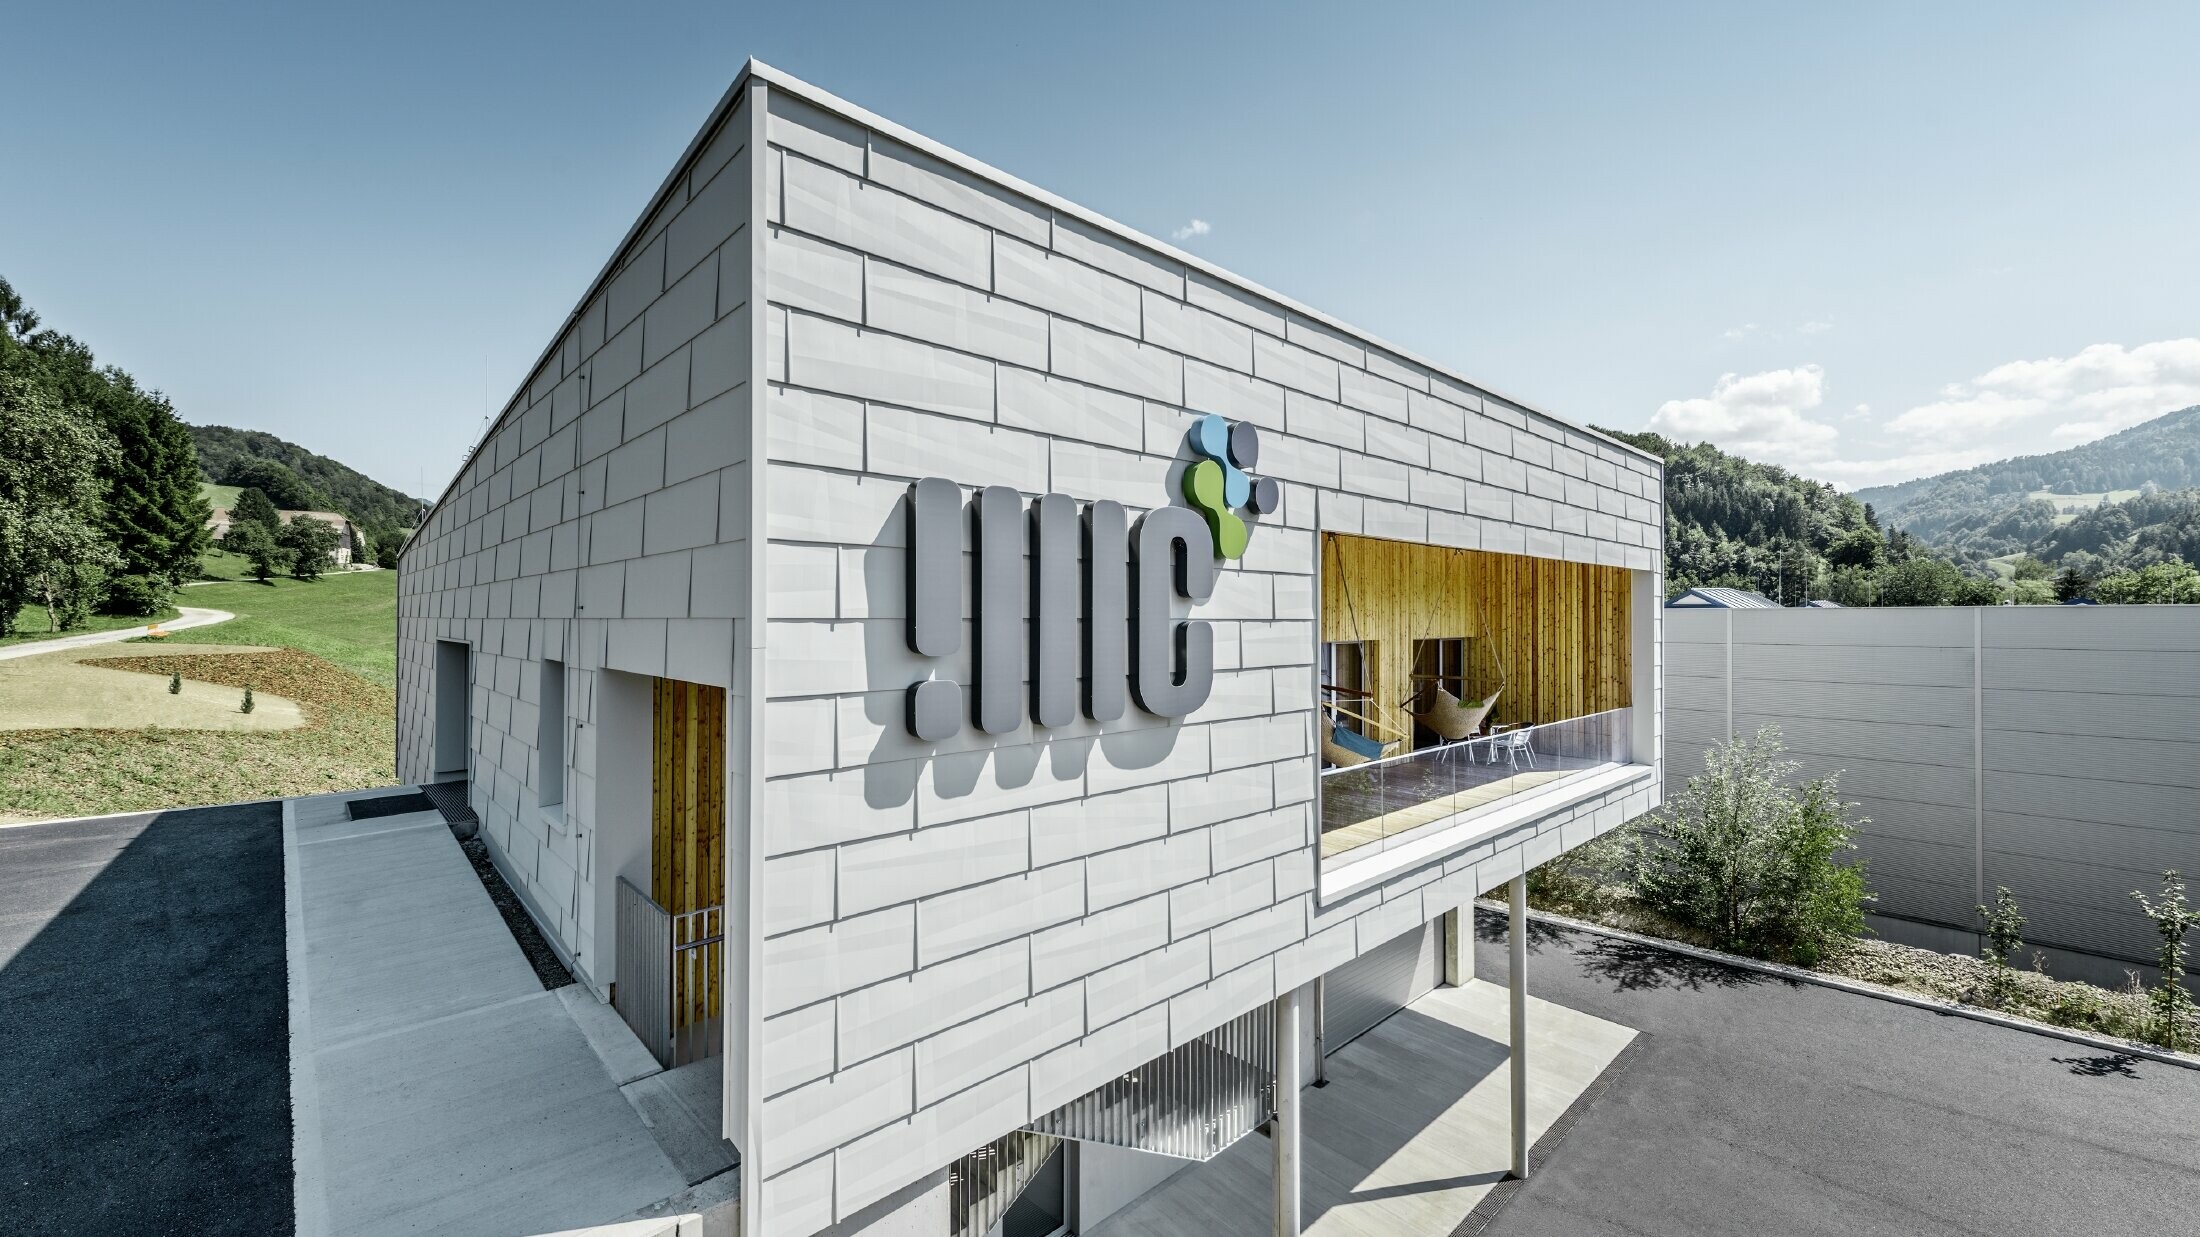 Moderno edificio aziendale a Ybbsitz con copertura piatta e facciata in alluminio; la facciata è stata rivestita con pannelli per facciata PREFA FX.12 in bianco prefa.